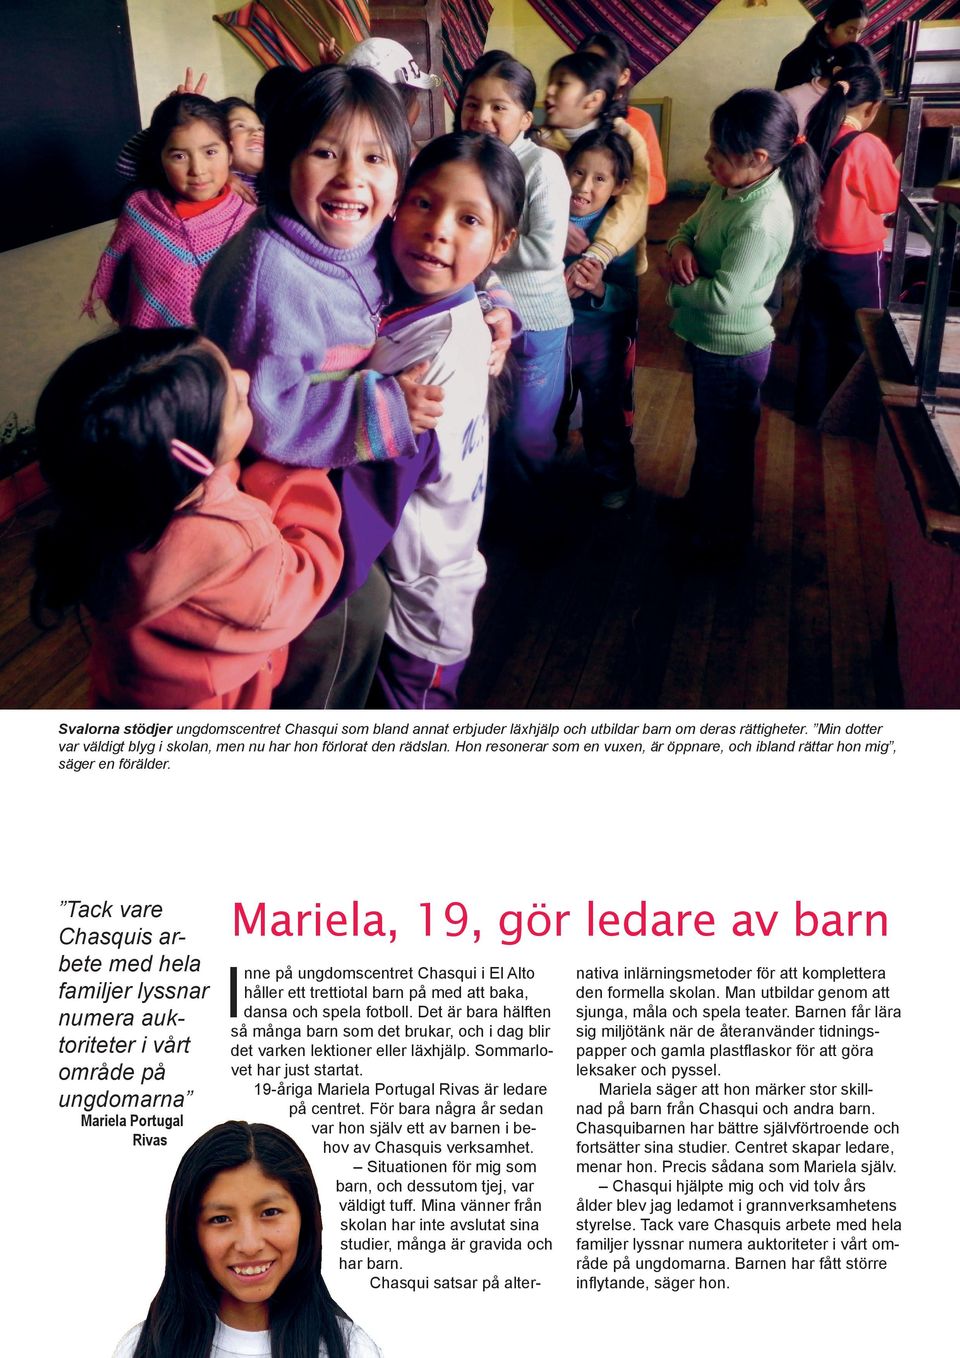 Tack vare Chasquis arbete med hela familjer lyssnar numera auktoriteter i vårt område på ungdomarna Mariela Portugal Rivas Mariela, 19, gör ledare av barn I nne på ungdomscentret Chasqui i El Alto